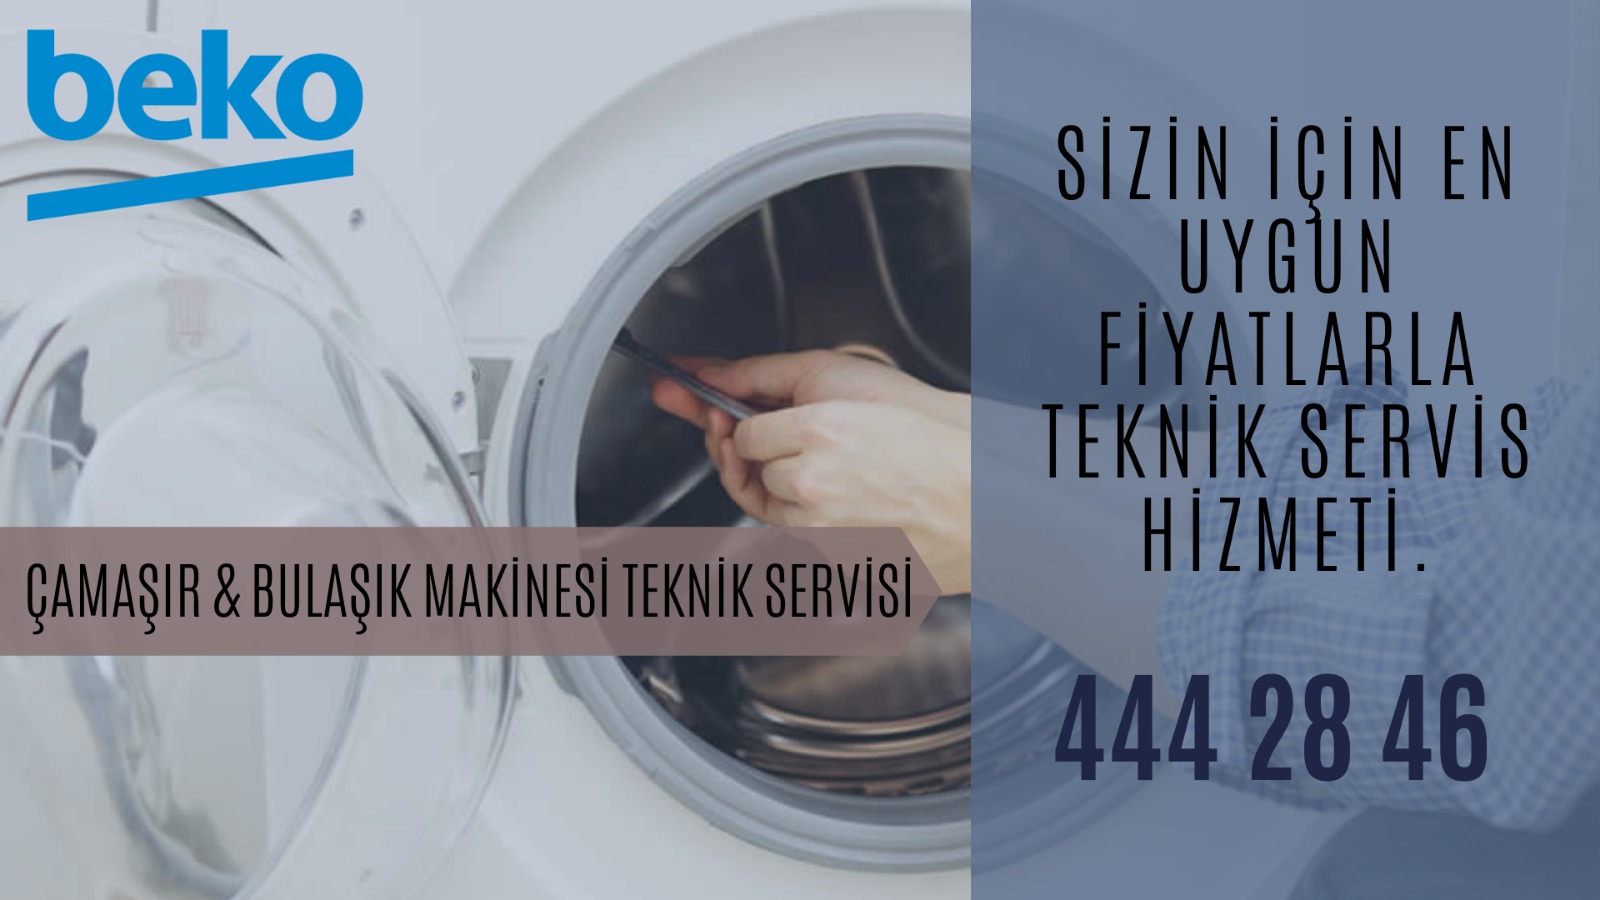 Aydın Beko Çamaşır-Bulaşık Makinesi Servisi